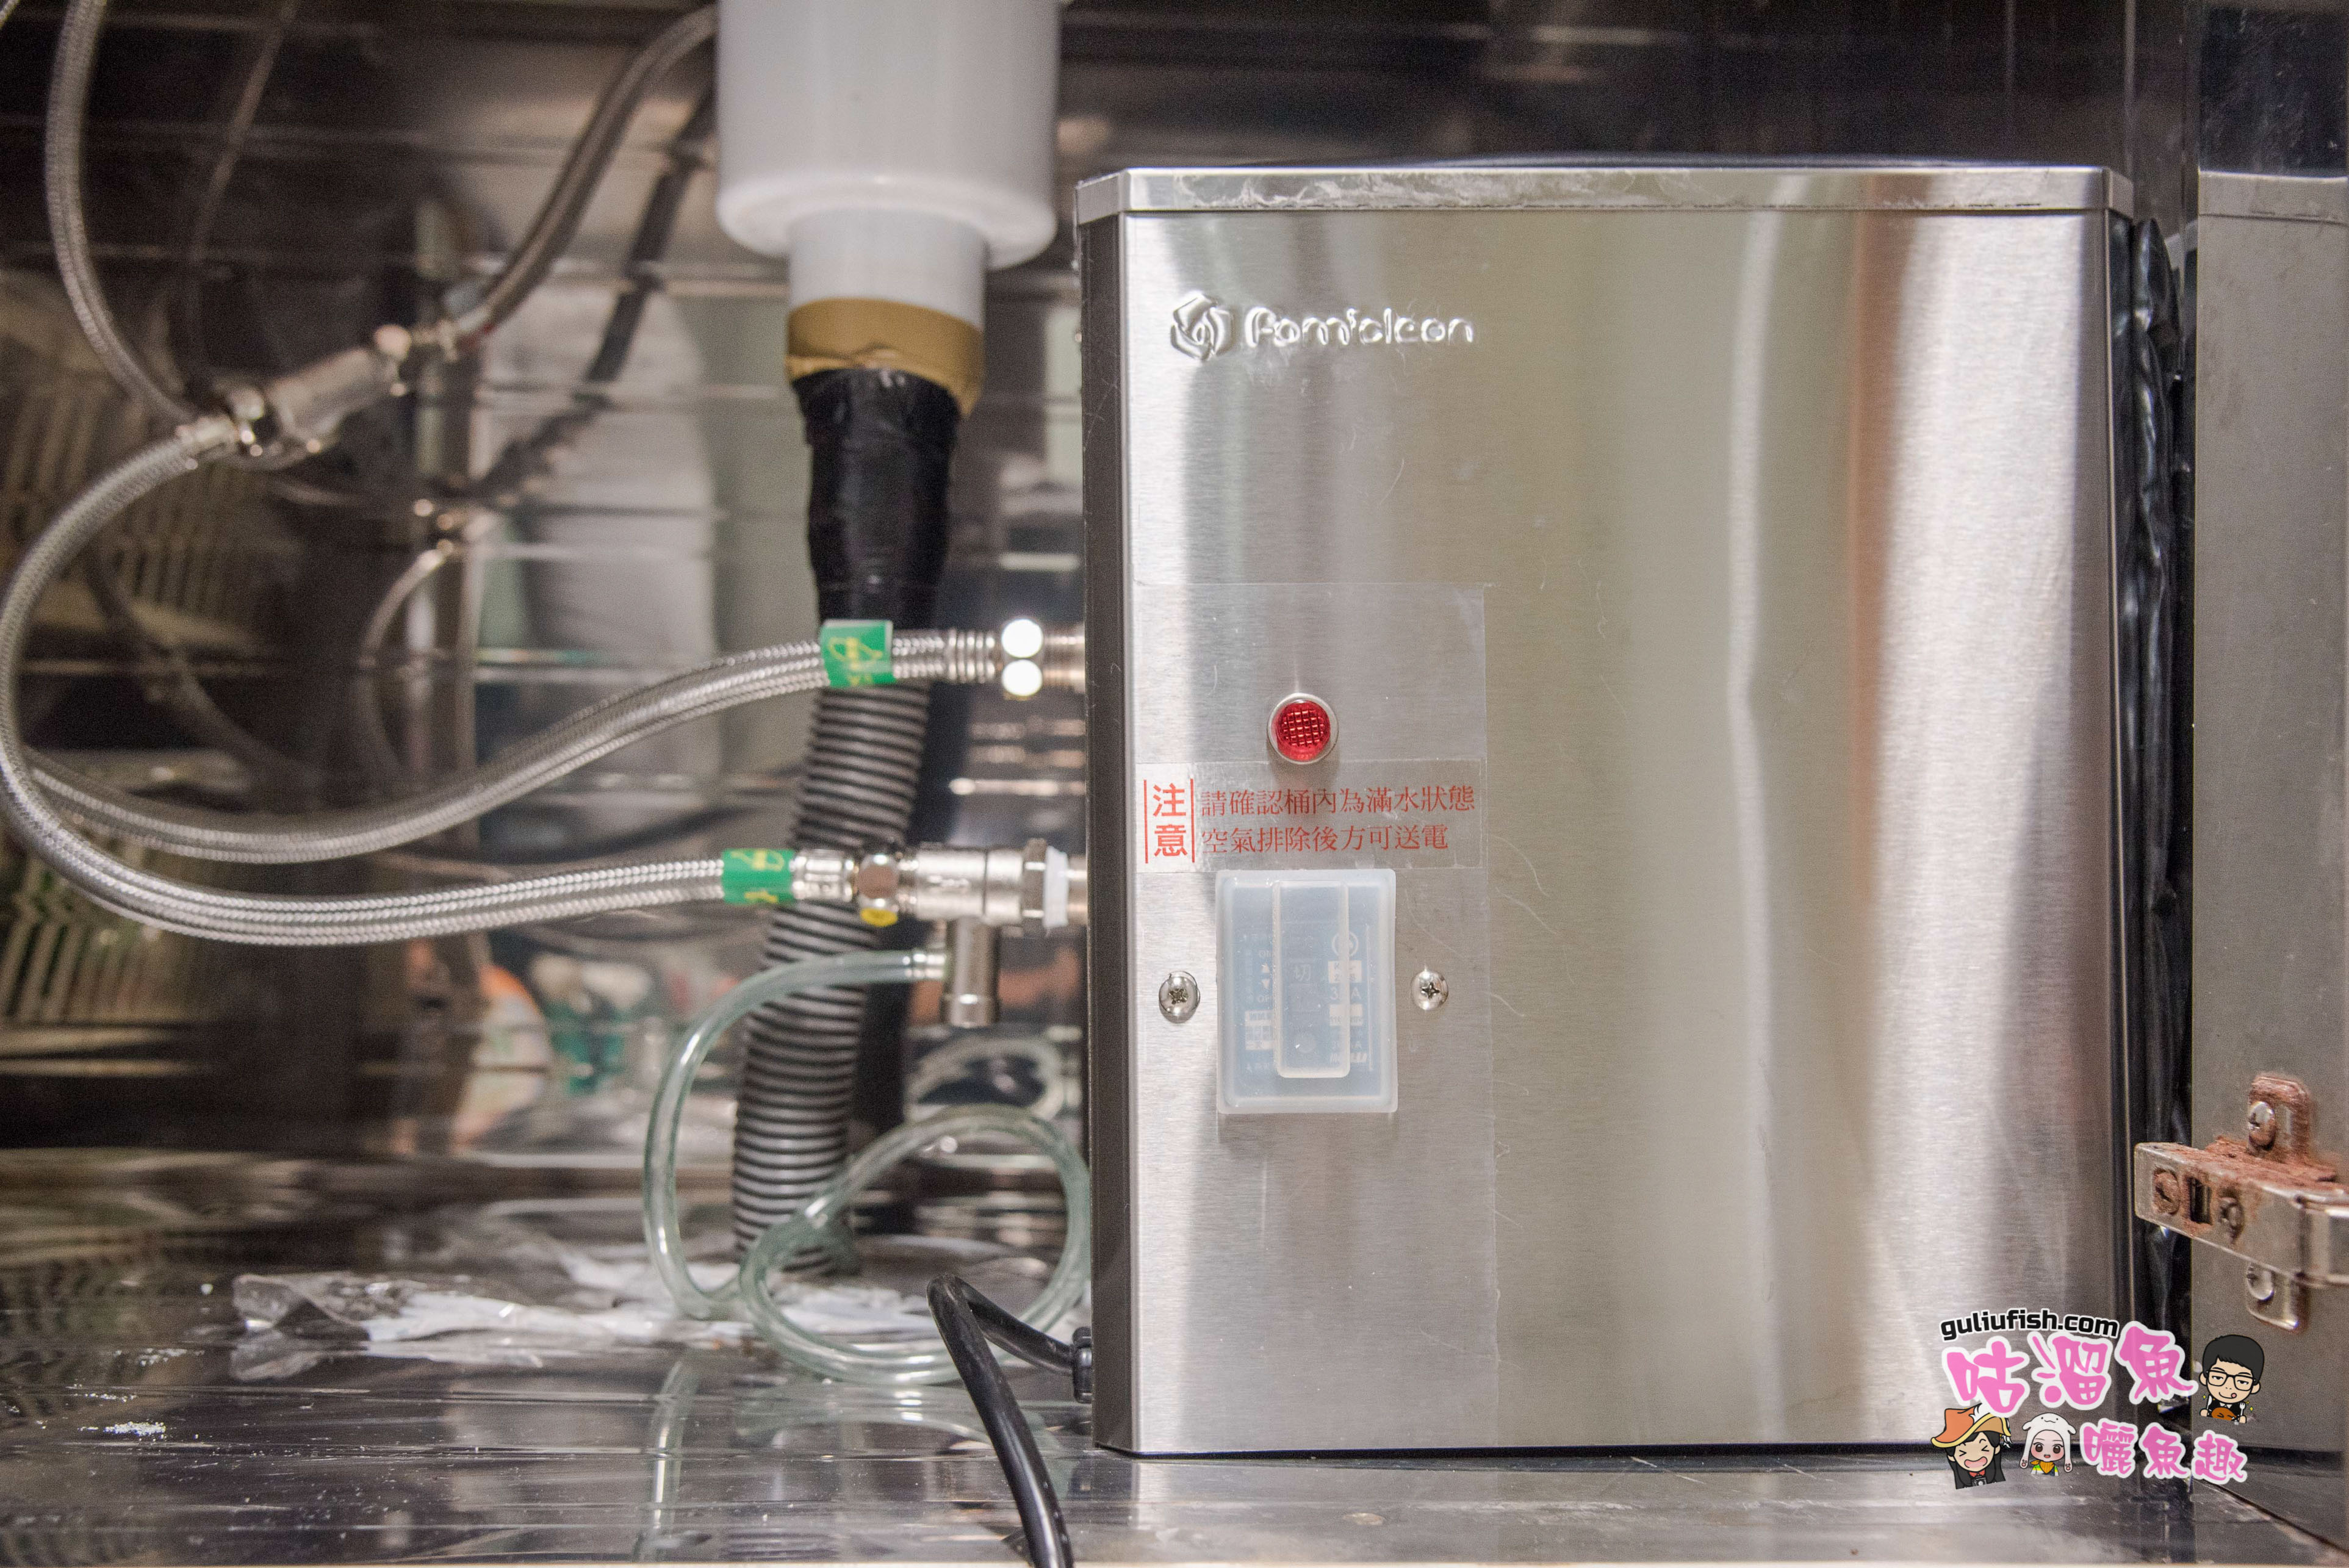 小資家電投資推薦》Famiclean 廚衛電能熱水器：解決廚房熱水問題，溫暖人心 每天只要一度電解決長年冬季困擾